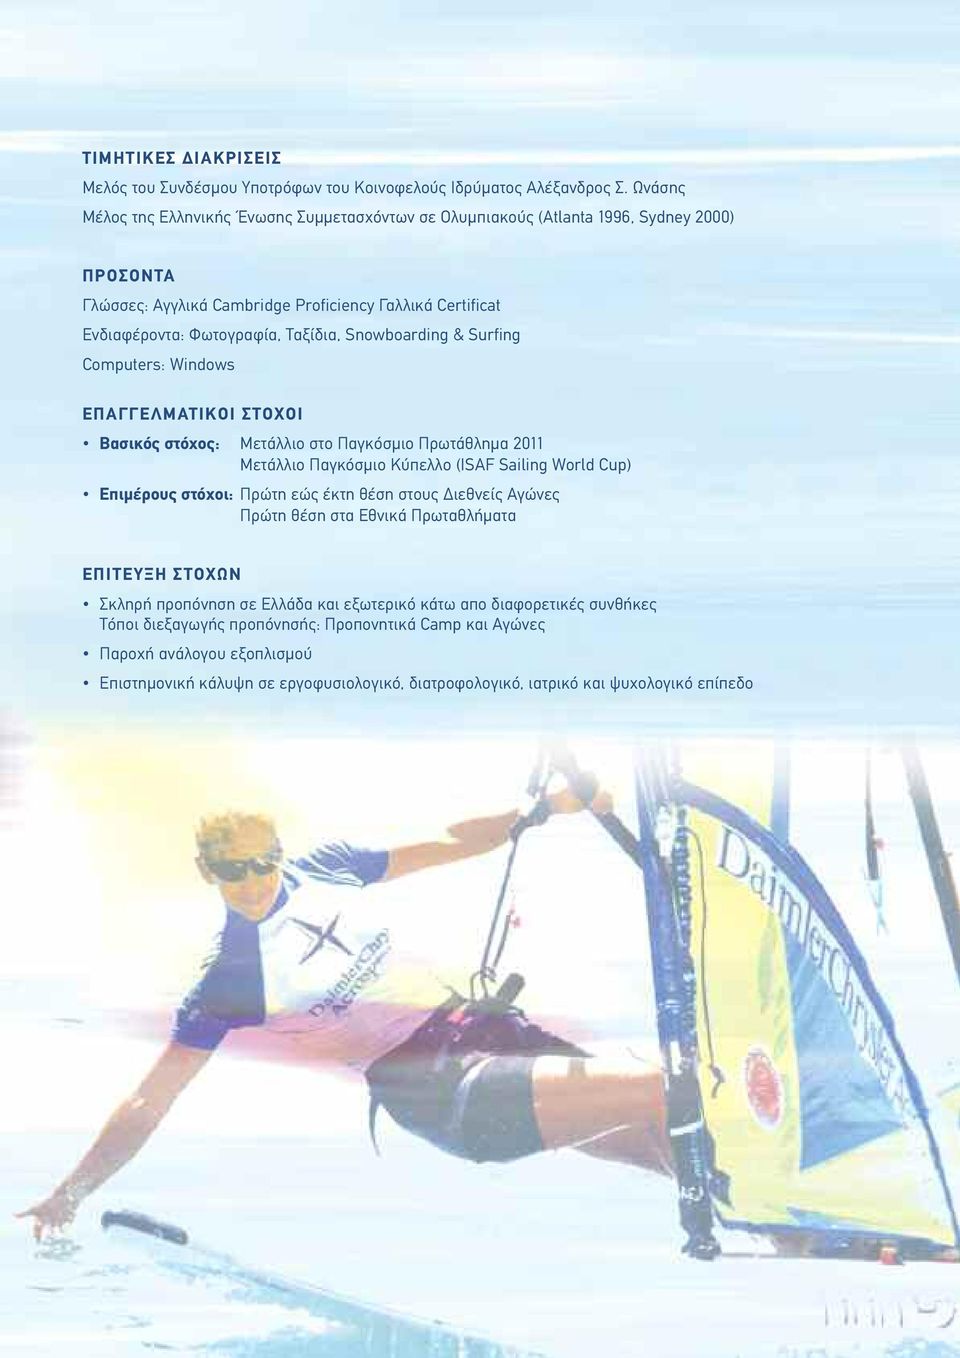 Snowboarding & Surfing Computers: Windows ΕΠΑΓΓΕΛΜΑΤΙΚΟΙ ΣΤΟΧΟΙ Βασικός στόχος: Μετάλλιο στο Παγκόσµιο Πρωτάθληµα 2011 Μετάλλιο Παγκόσµιο Κύπελλο (ΙSAF Sailing World Cup) Επιµέρους στόχοι: Πρώτη εώς